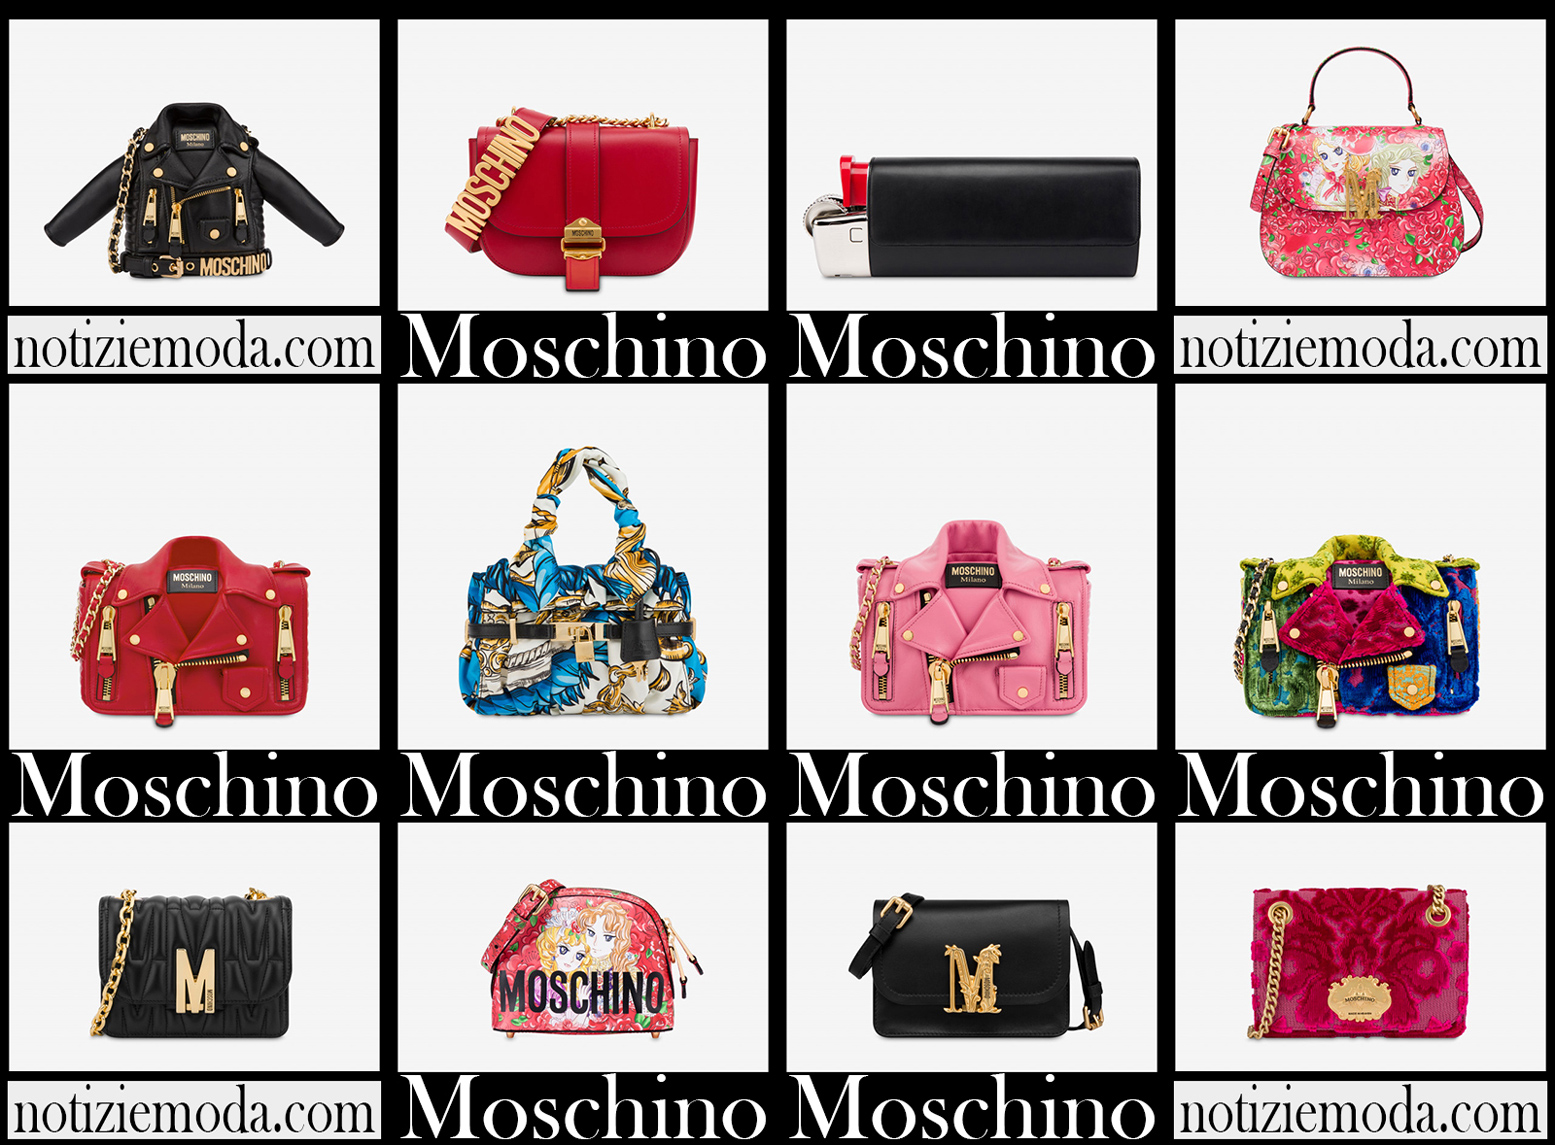 Nuovi arrivi borse Moschino 2021 accessori moda donna